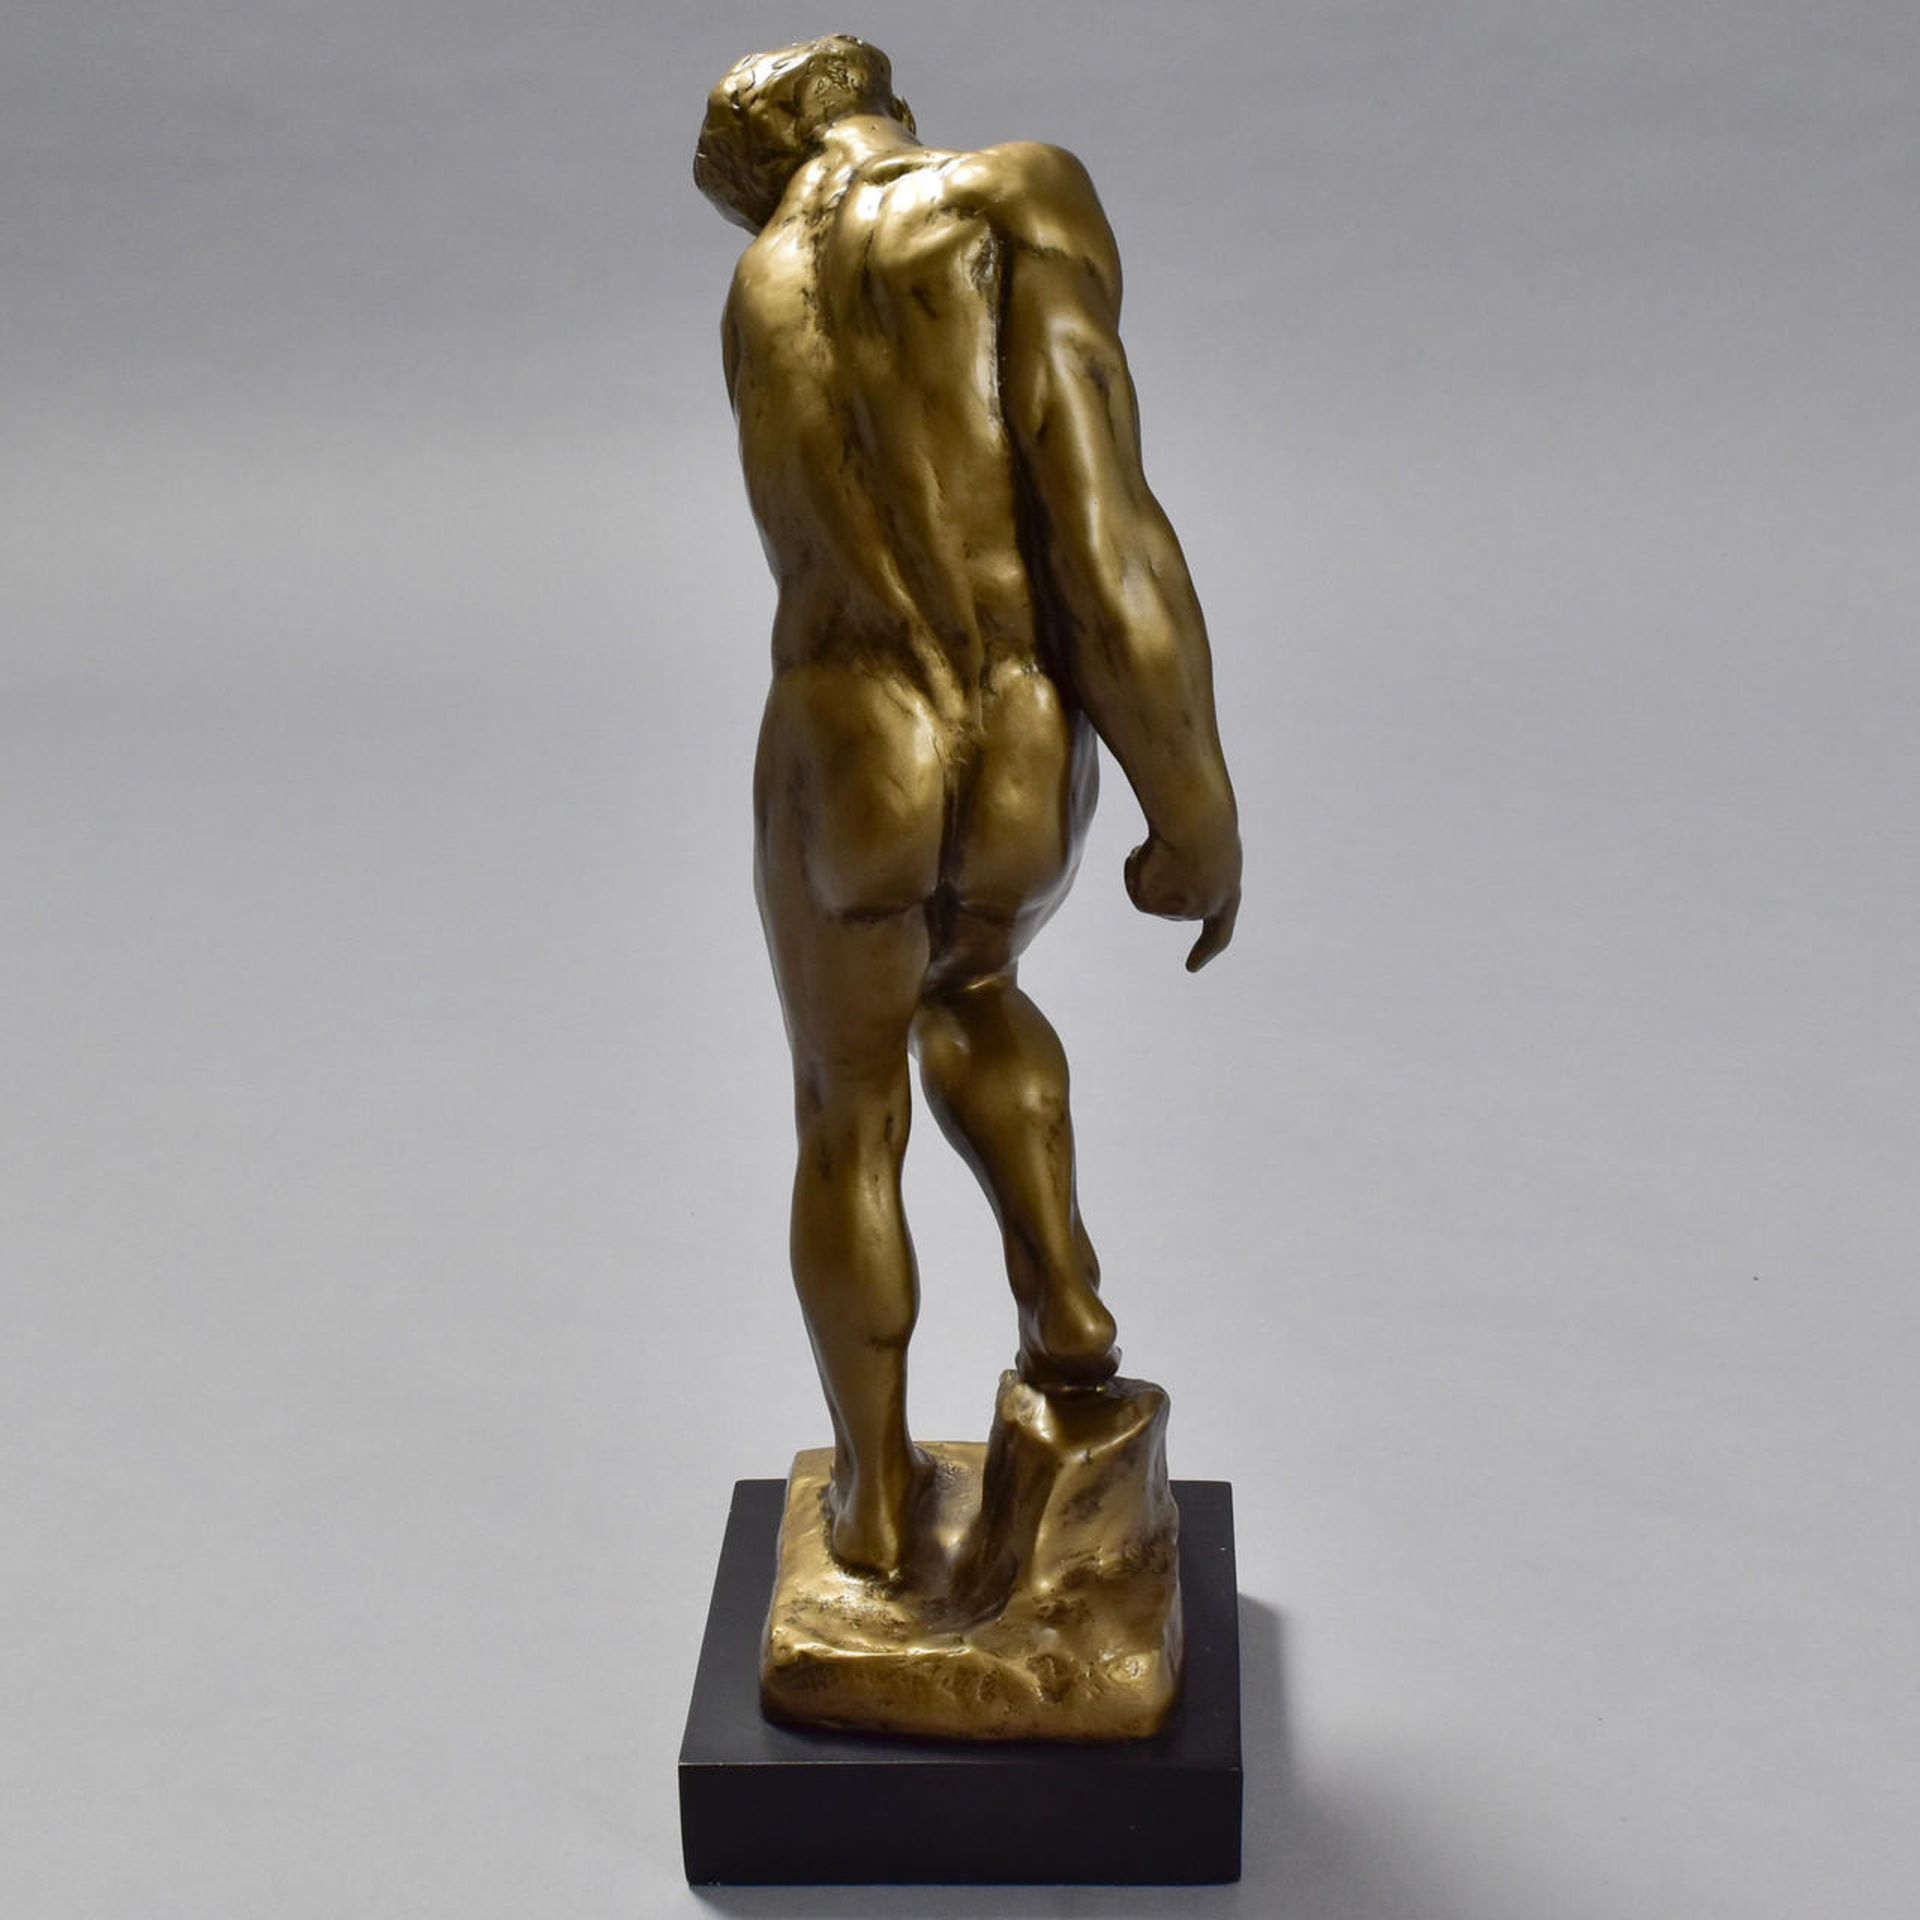 Auguste Rodin "Adam" Sculpture - Image 5 of 5